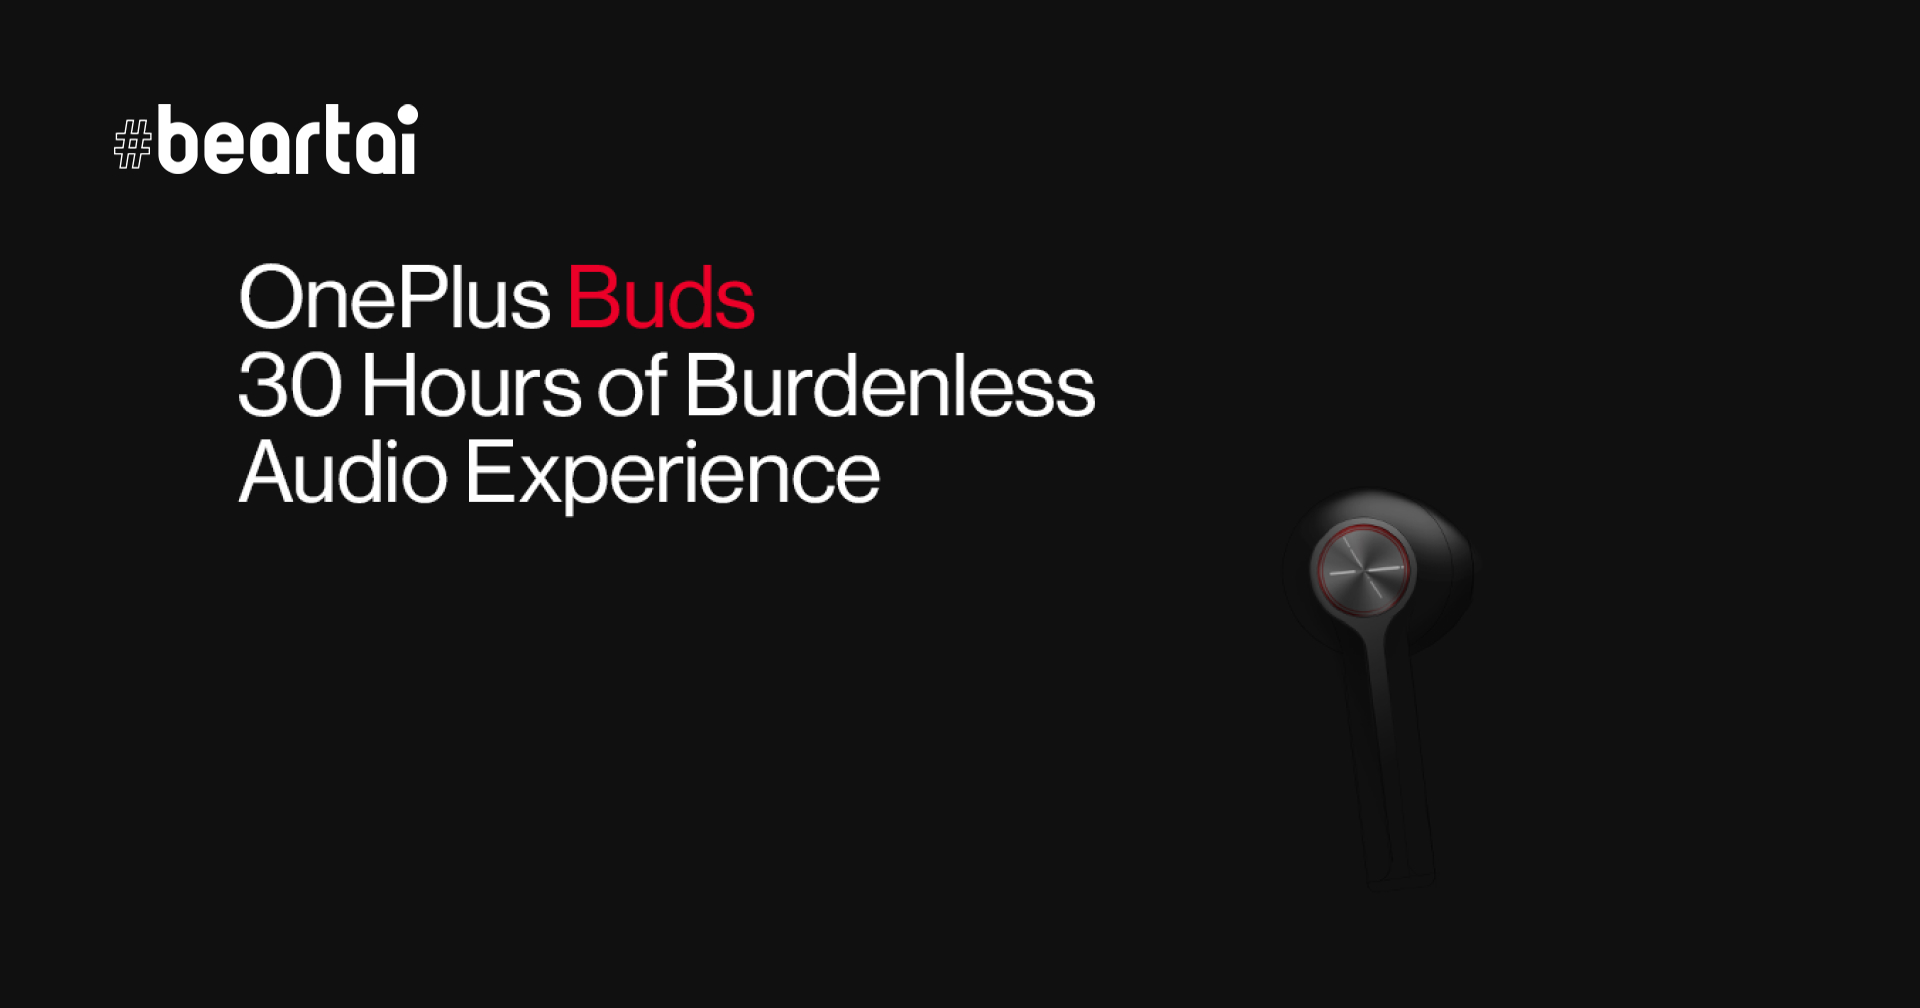 ยืนยัน!! OnePlus Buds จะใช้งานได้สูงสุดถึง 30 ชั่วโมง